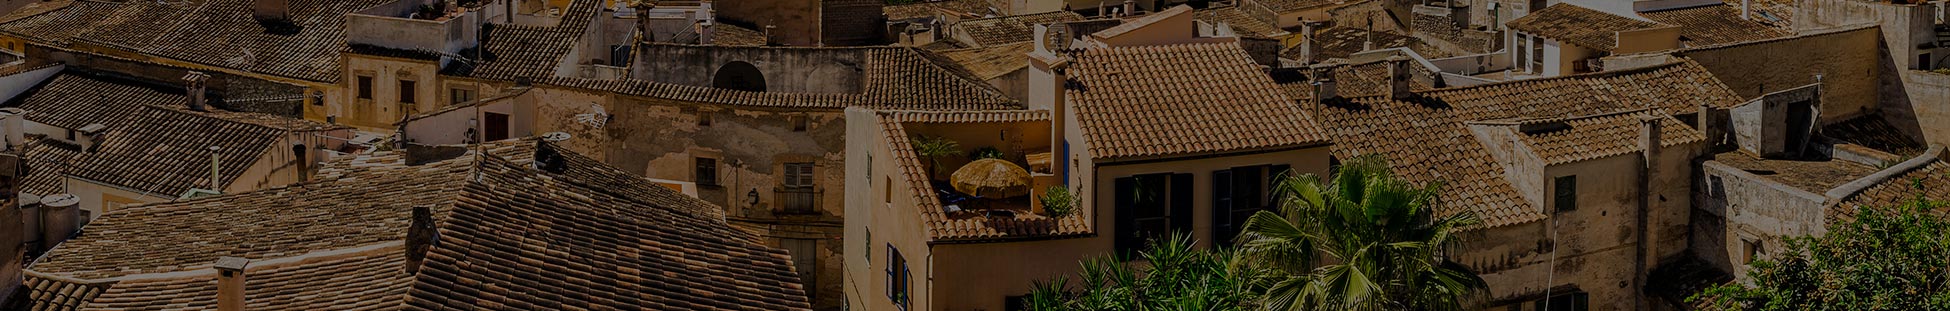 Bedarfsermittlung ImmobilienScouting Mallorca